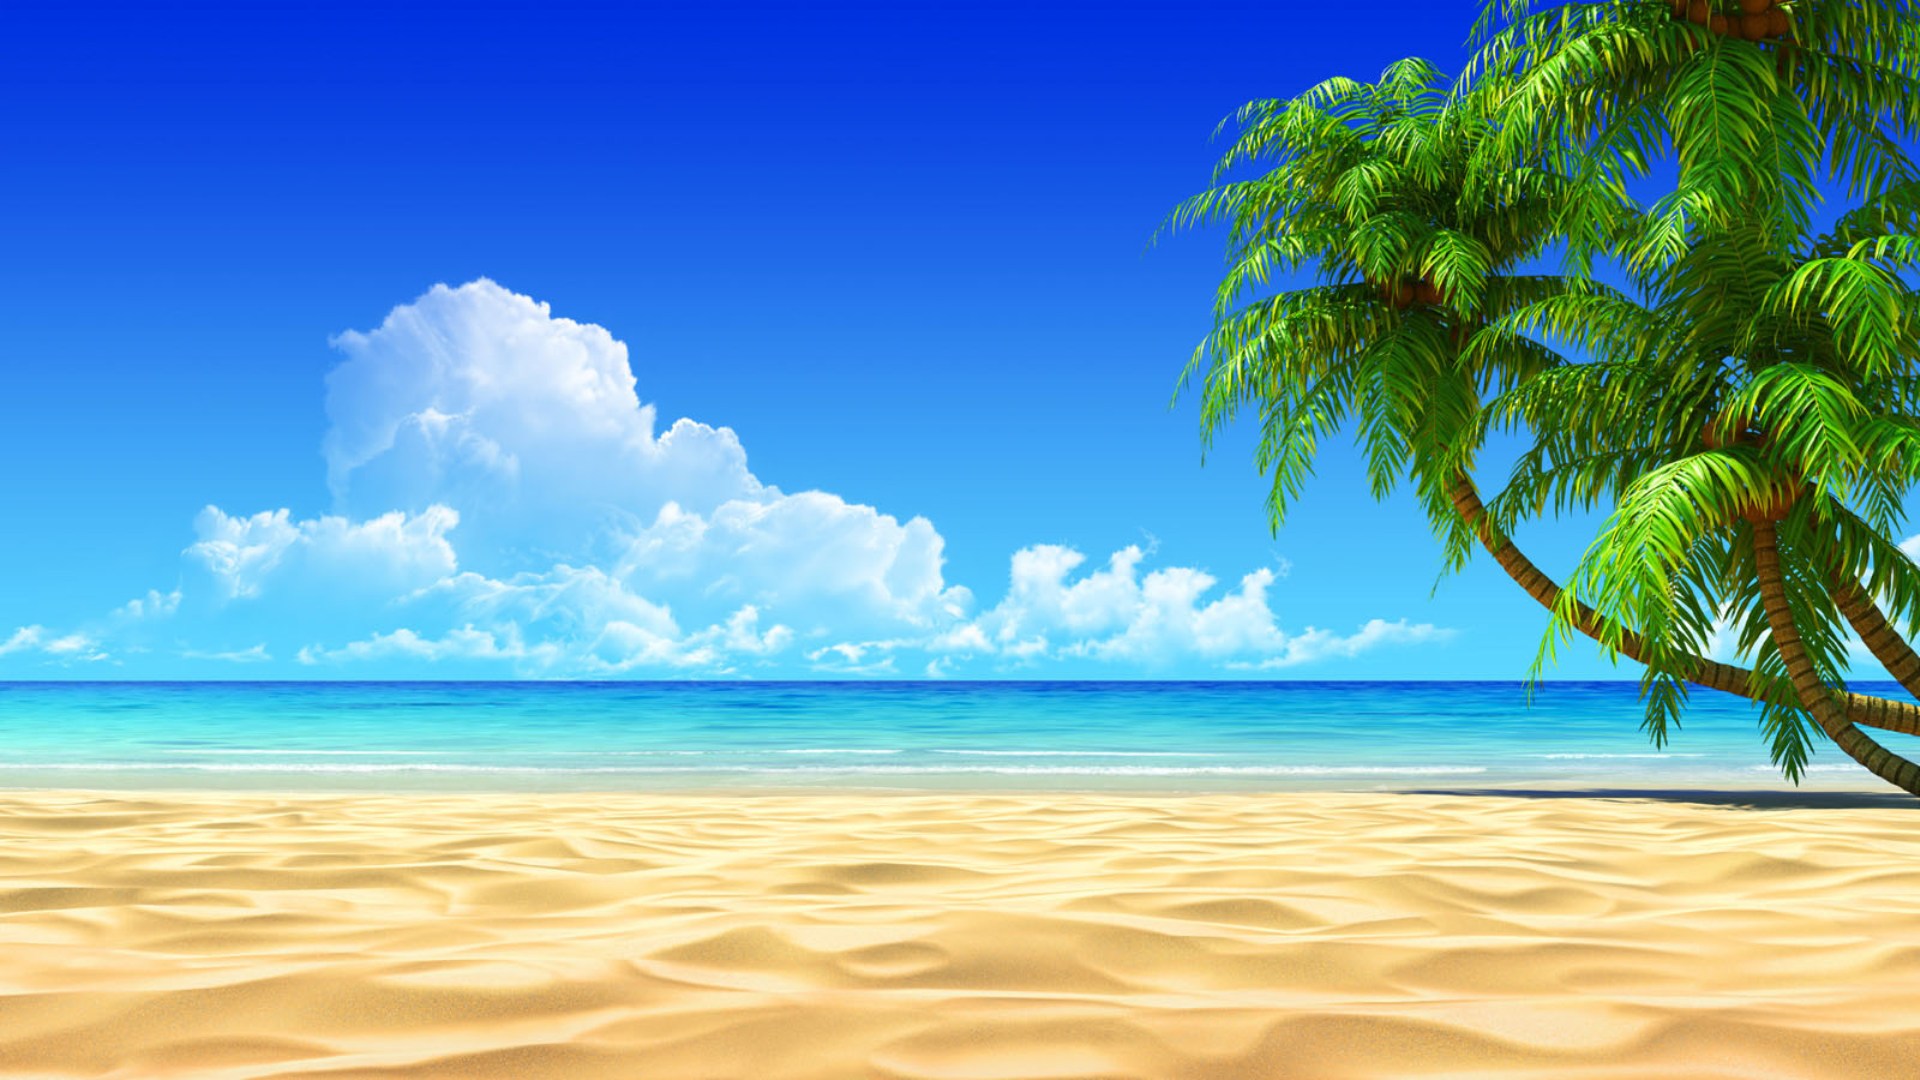 Hình nền biển sẽ mang đến cho bạn bầu không khí mát mẻ và dễ chịu hơn khi làm việc hay giải trí trên máy tính. Hình ảnh của những cây cối và bãi biển dài đầy những chiếc dù sẽ khiến cho bạn thích thú. Được cập nhật định kỳ, bộ sưu tập hình nền biển sẽ đem đến cho bạn một trải nghiệm truy cập hình ảnh đặc biệt.